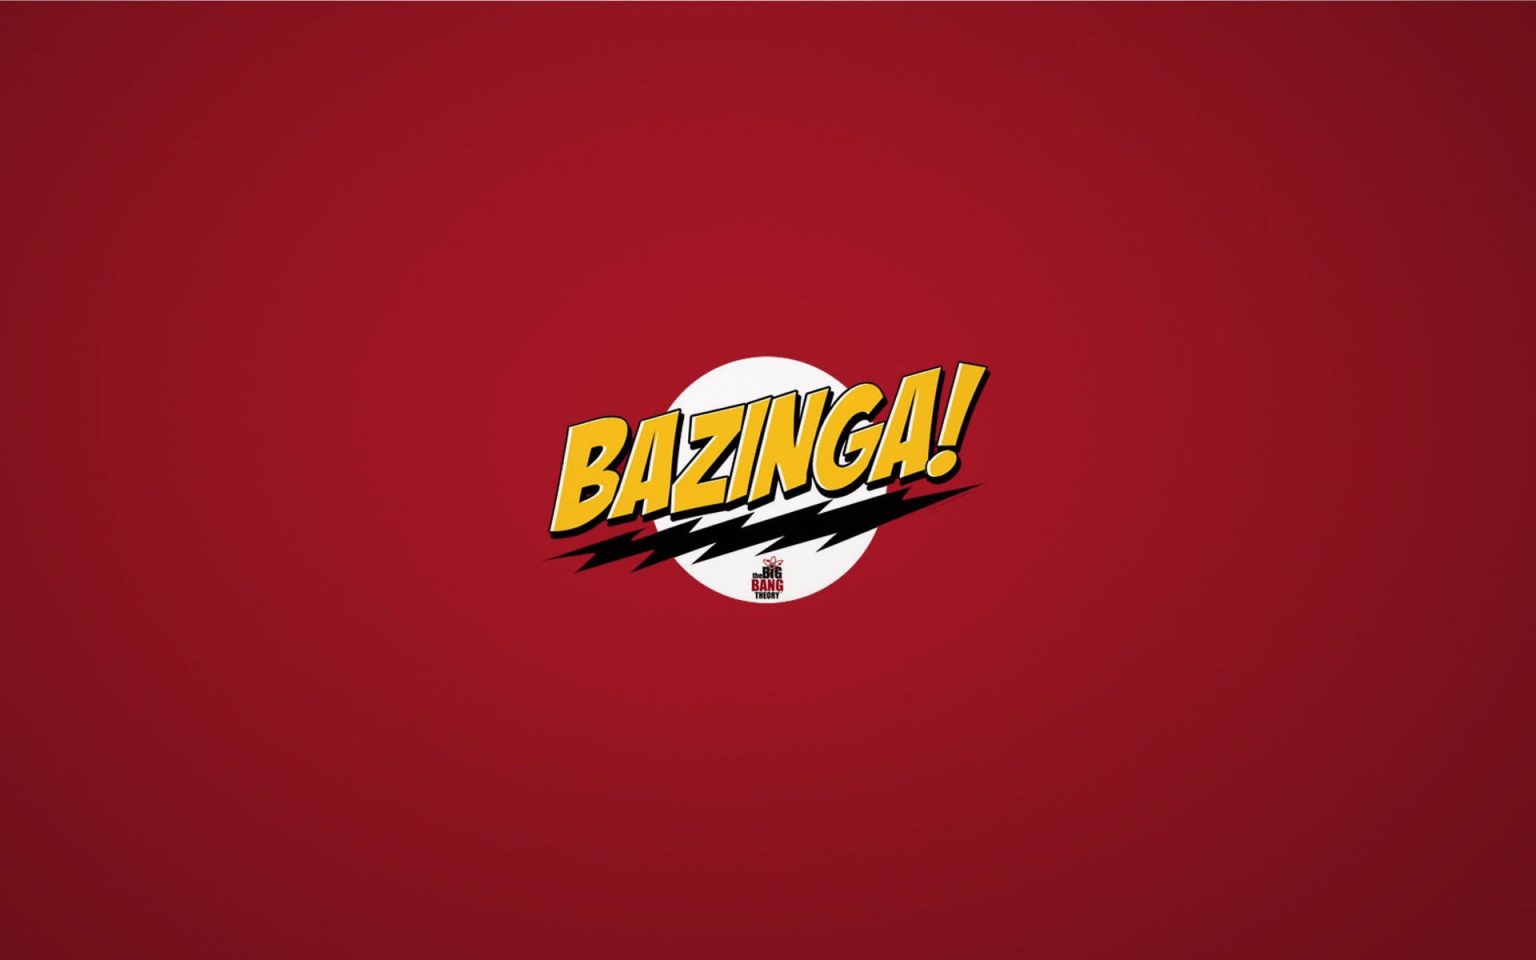 The Big Bang Theory Bazinga wallpaper, bazinga! text, sitcom, comedy